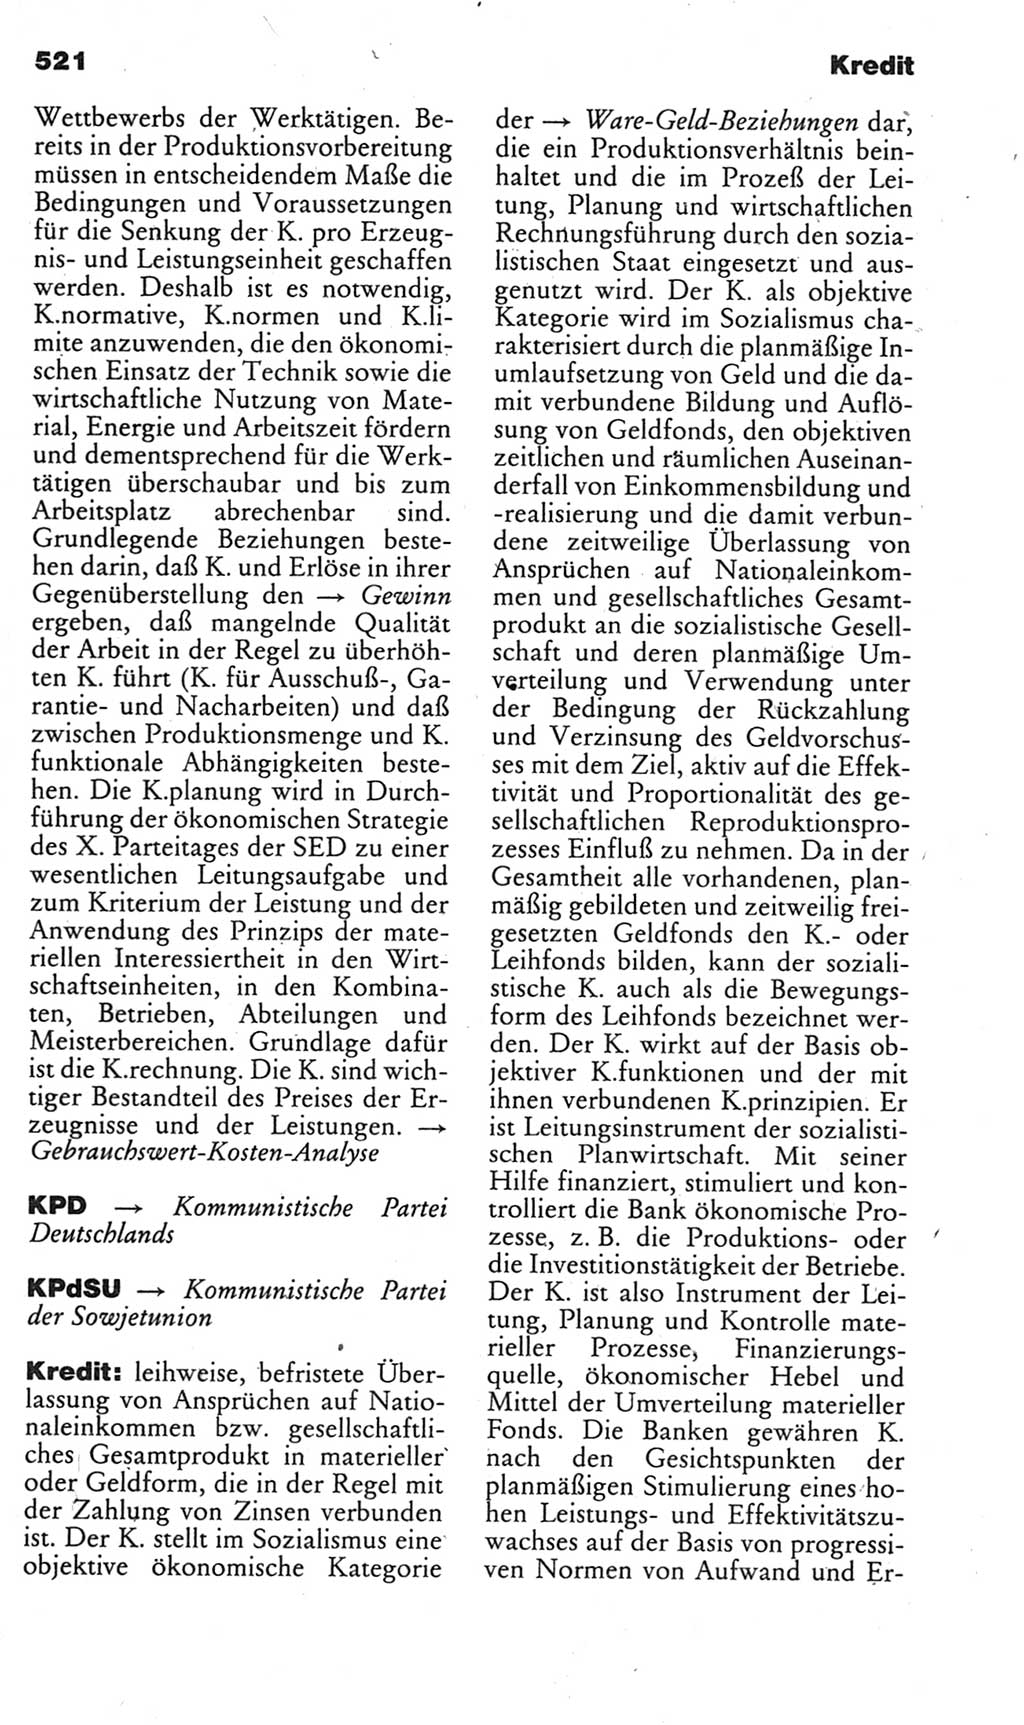 Kleines politisches Wörterbuch [Deutsche Demokratische Republik (DDR)] 1985, Seite 521 (Kl. pol. Wb. DDR 1985, S. 521)